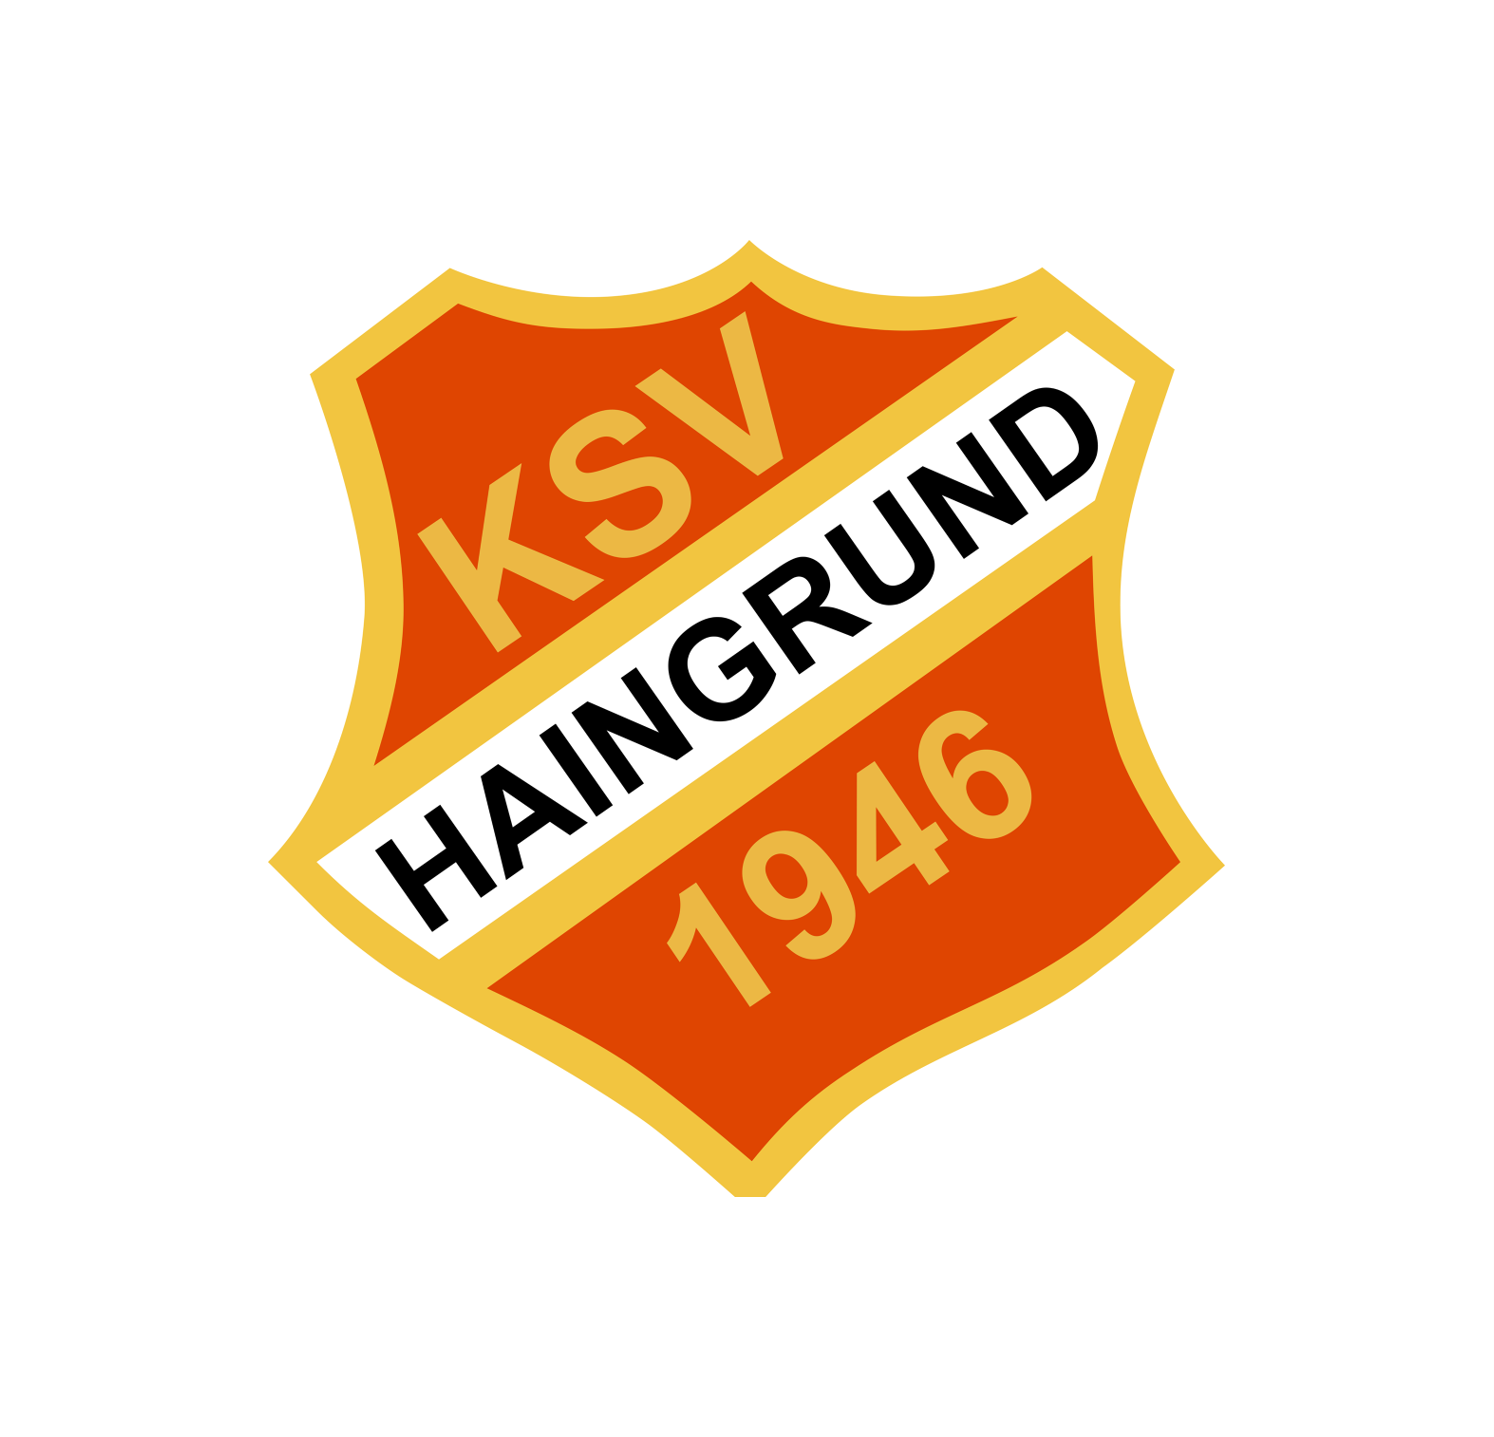 KSV Haingrund